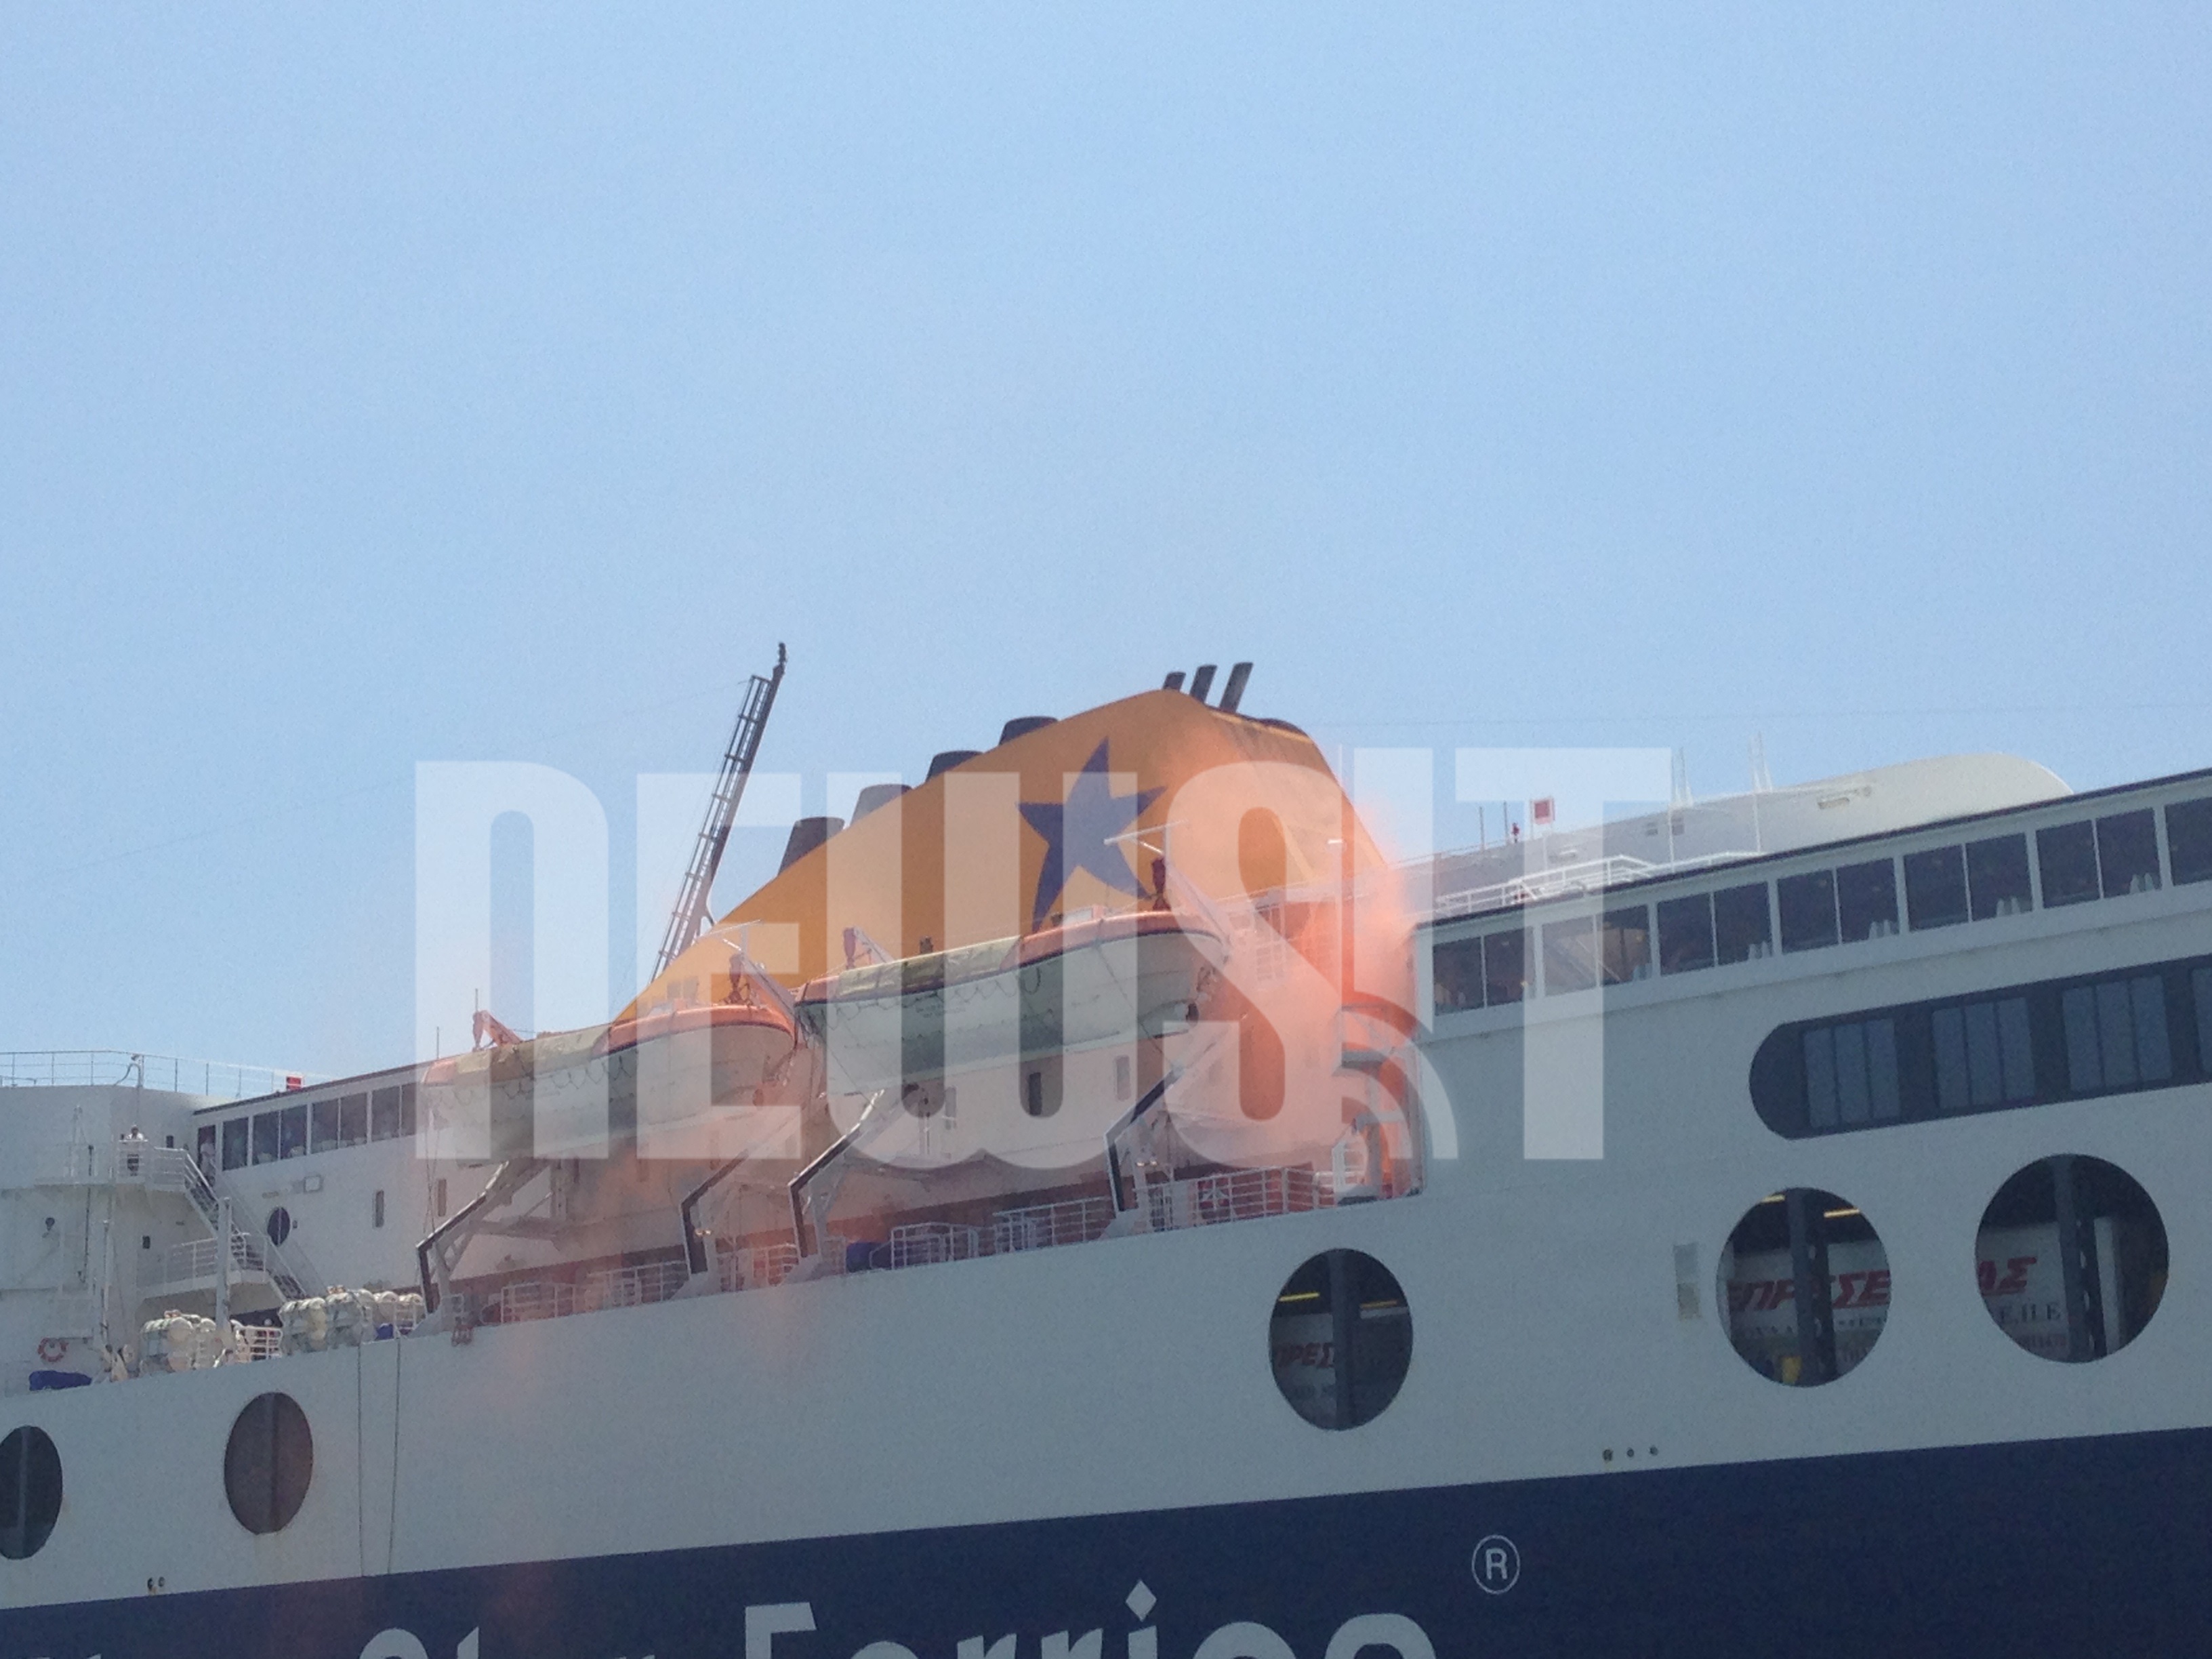 Η φωτιά σύμφωνα με την άσκηση ξέσπασε στην αριστερή πλευρά του πλοίου - ΦΩΤΟ NEWSIT